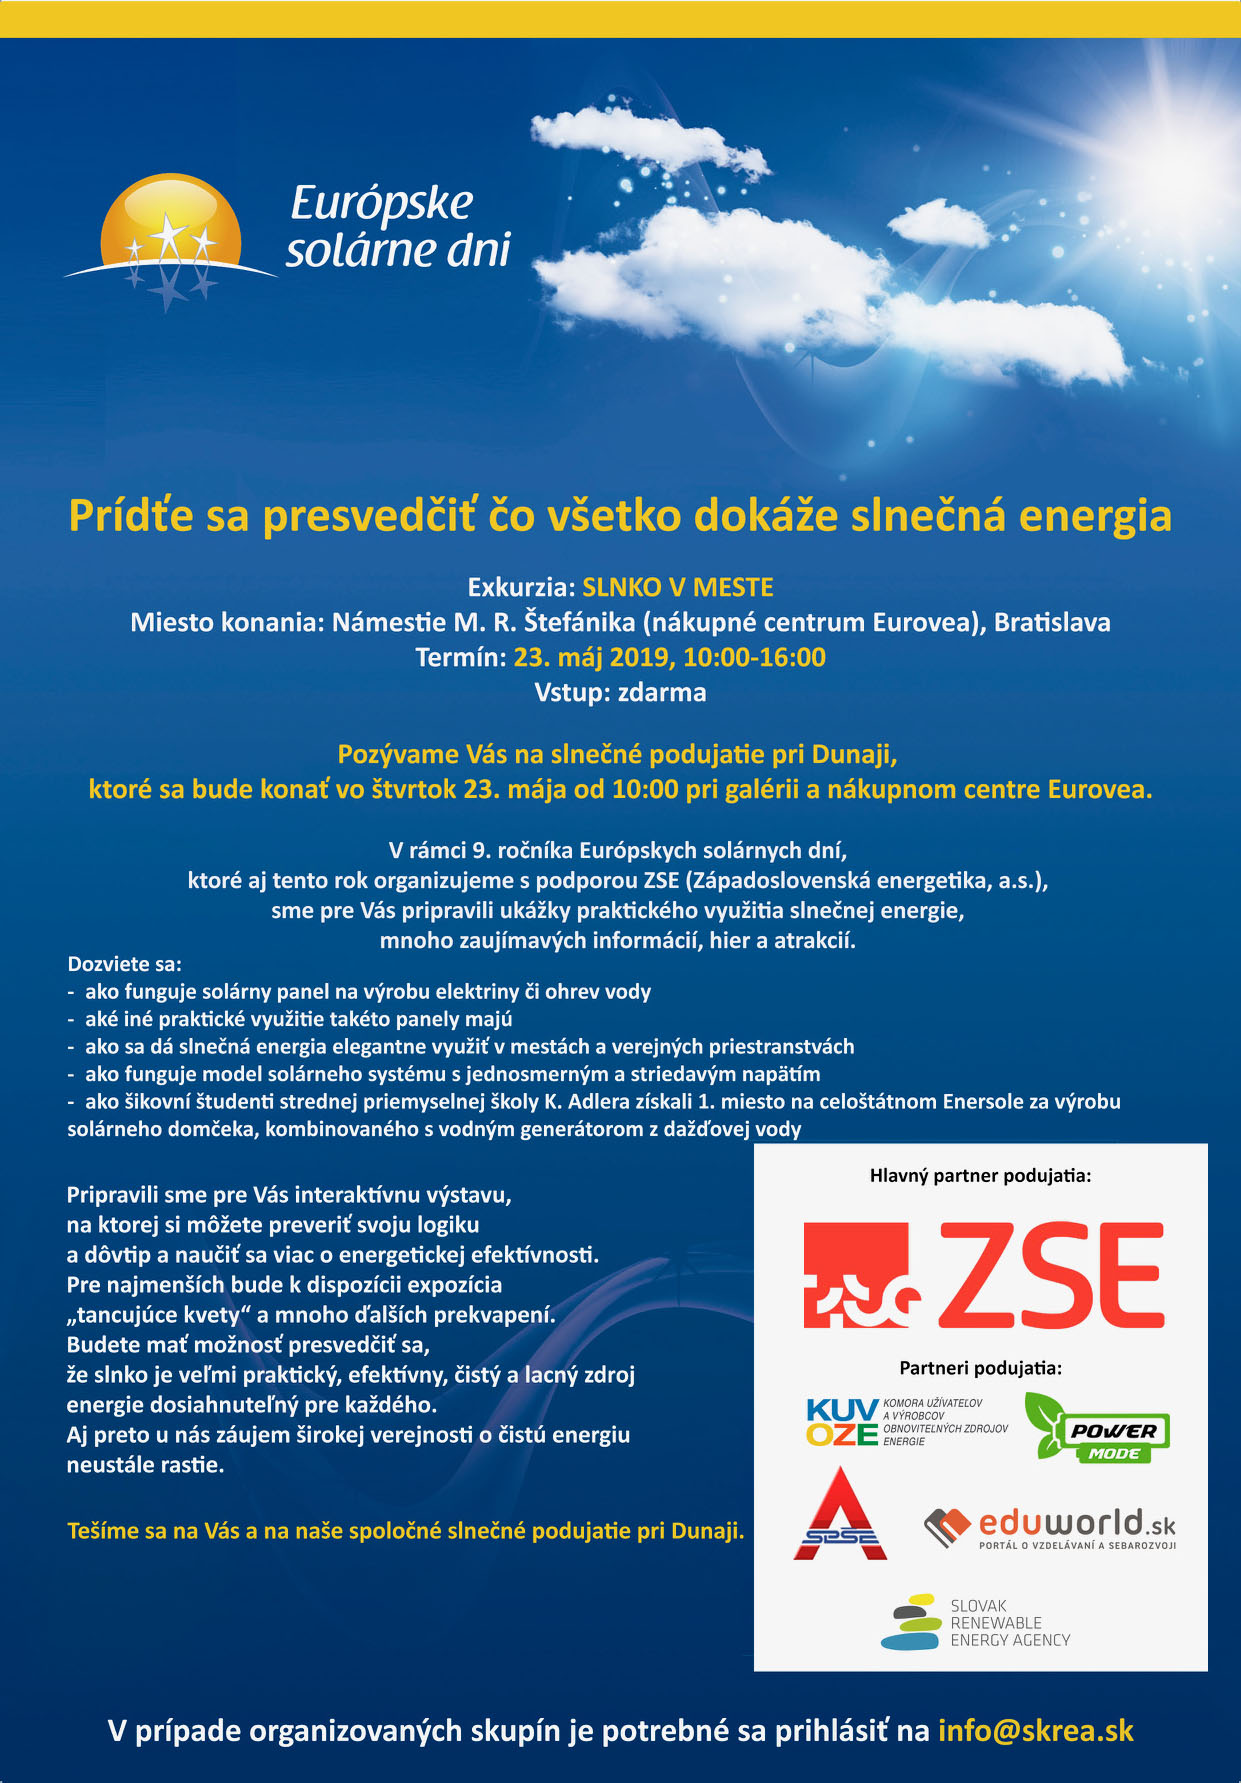 Podujatie “Slnko v meste” 23. maja 2019, Eurovea, Bratislava